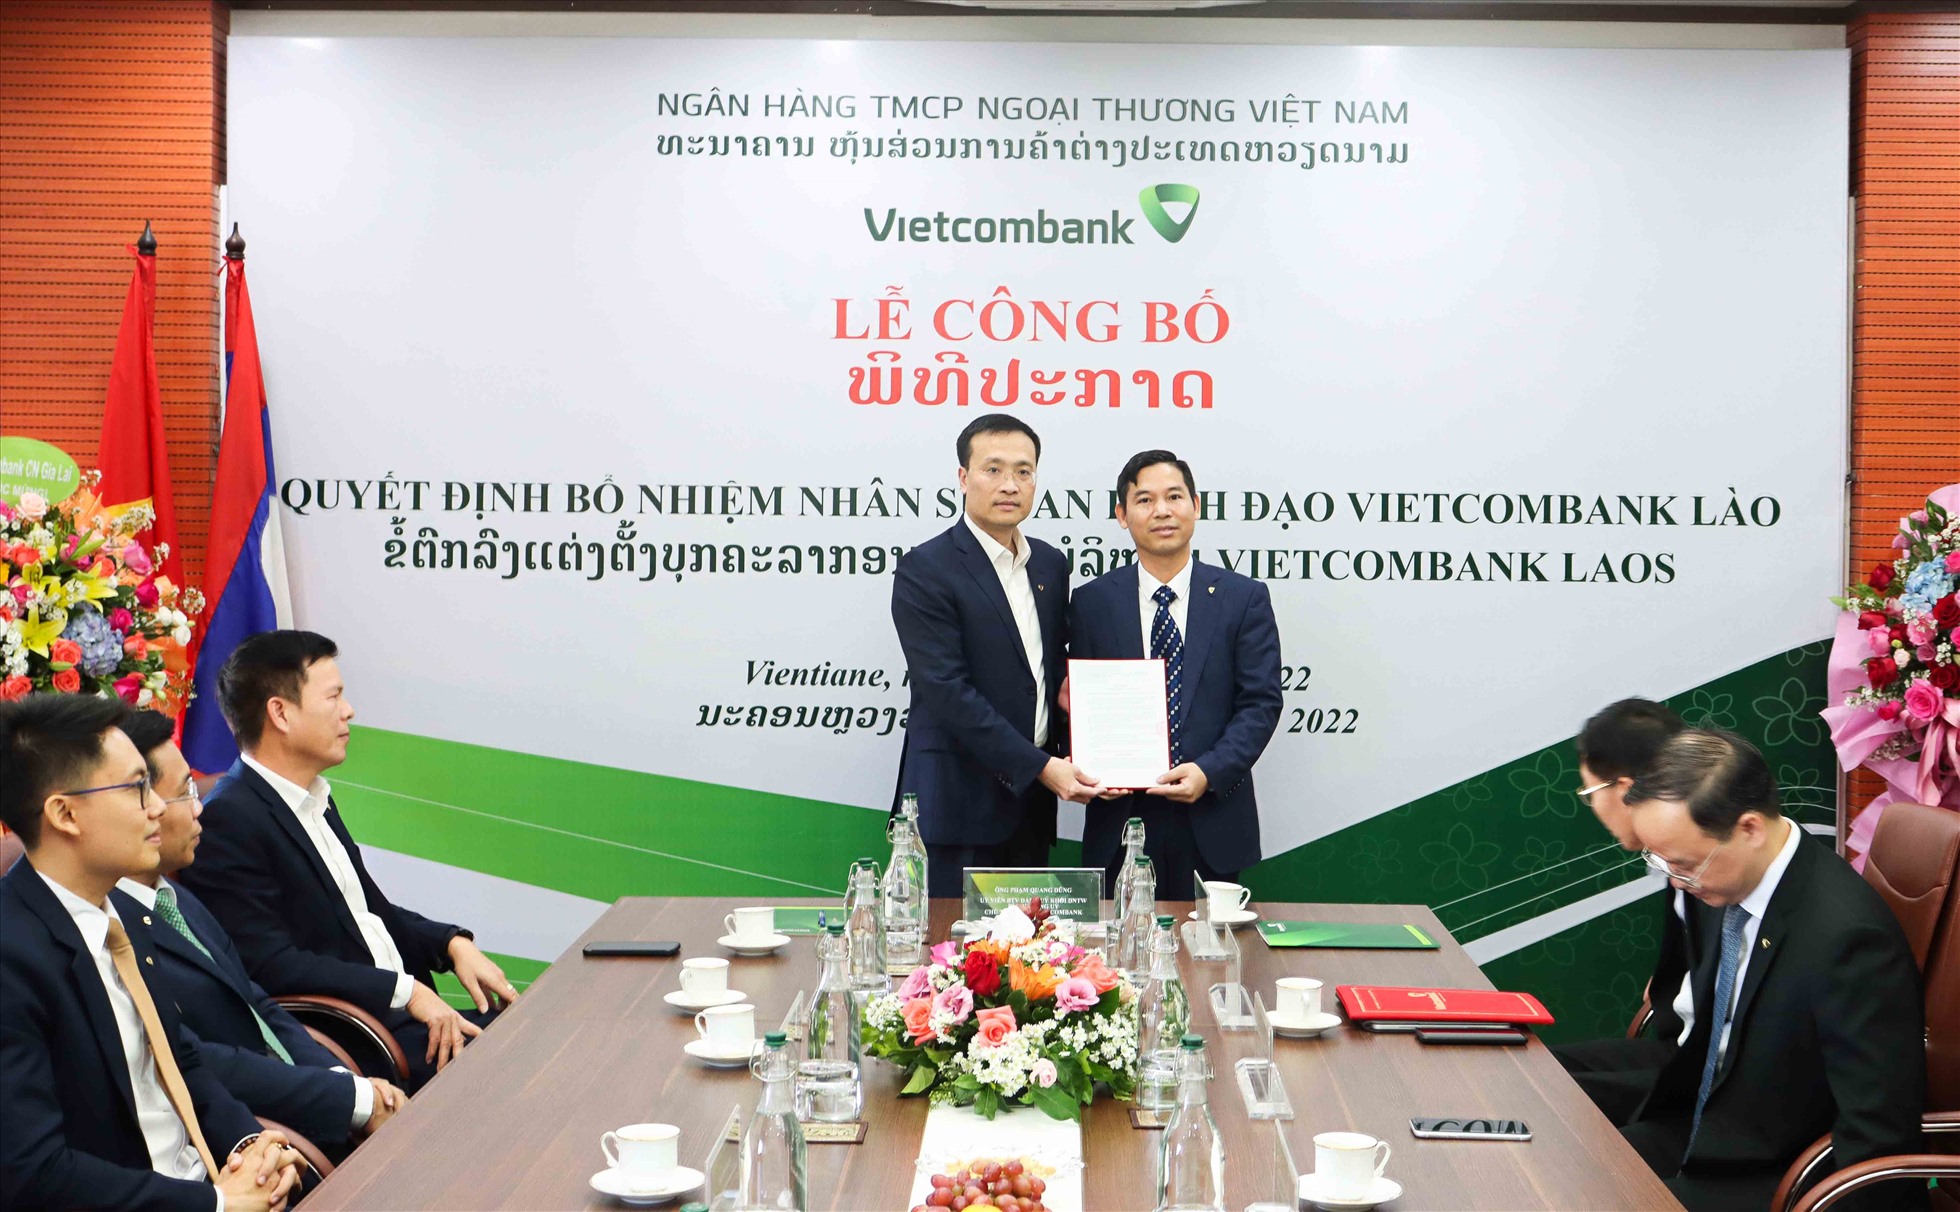 Chủ tịch HĐQT Vietcombank Phạm Quang Dũng (bên trái) trao quyết định bổ nhiệm Thành viên HĐQT VCB Lào cho ông Nguyễn Quang Minh. Ảnh: NH